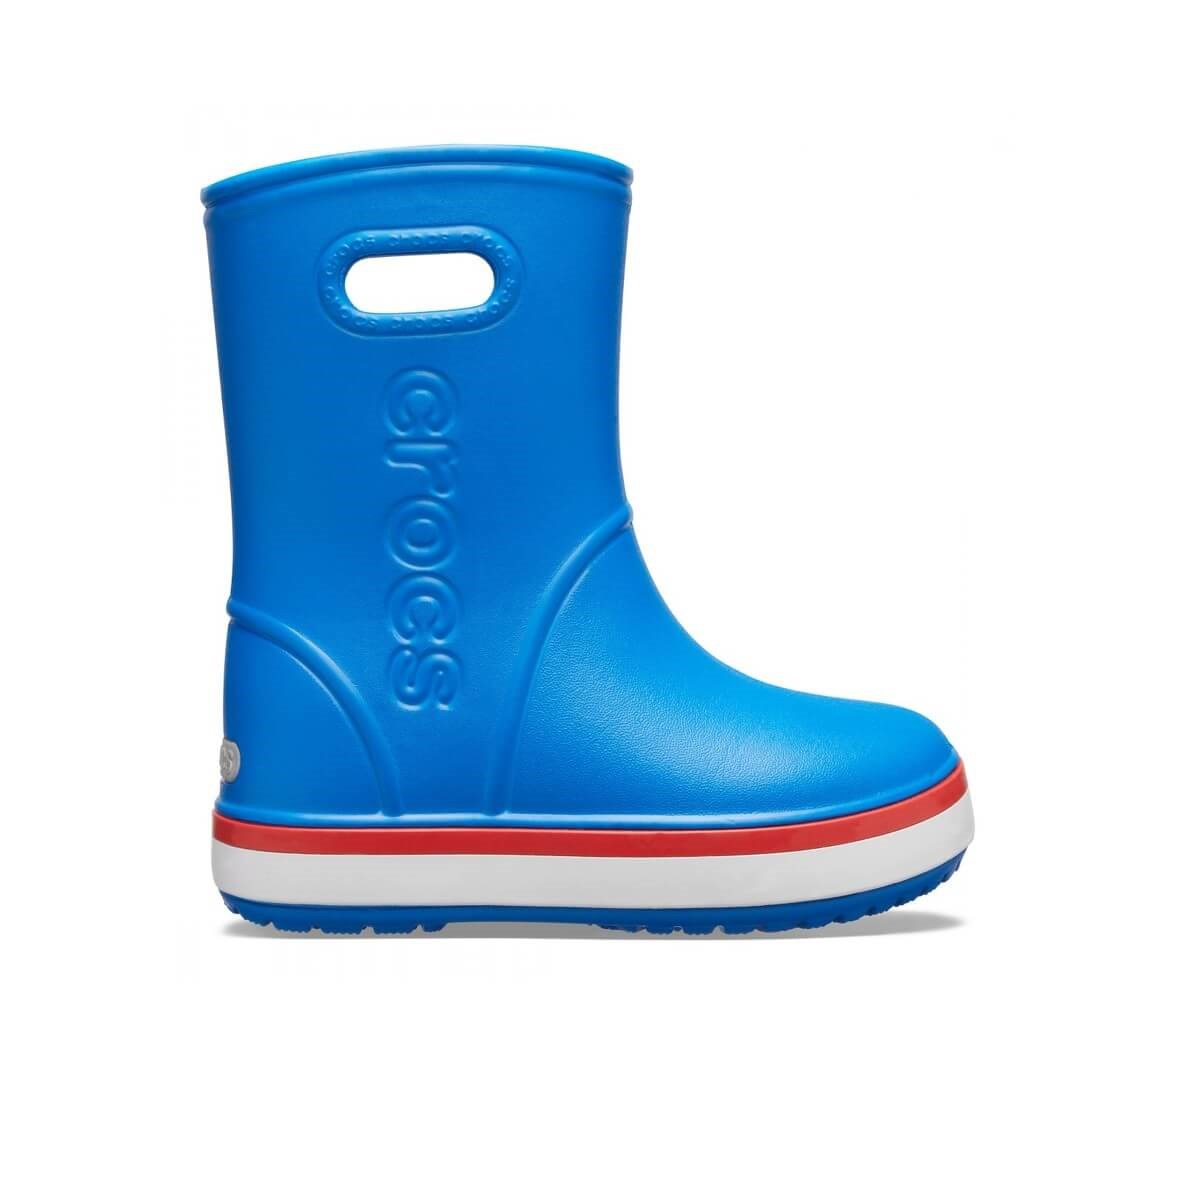 Crocs Crocband Rain Boot K Parlak Kobalt Mavi Çocuk Yağmur Çizmesi